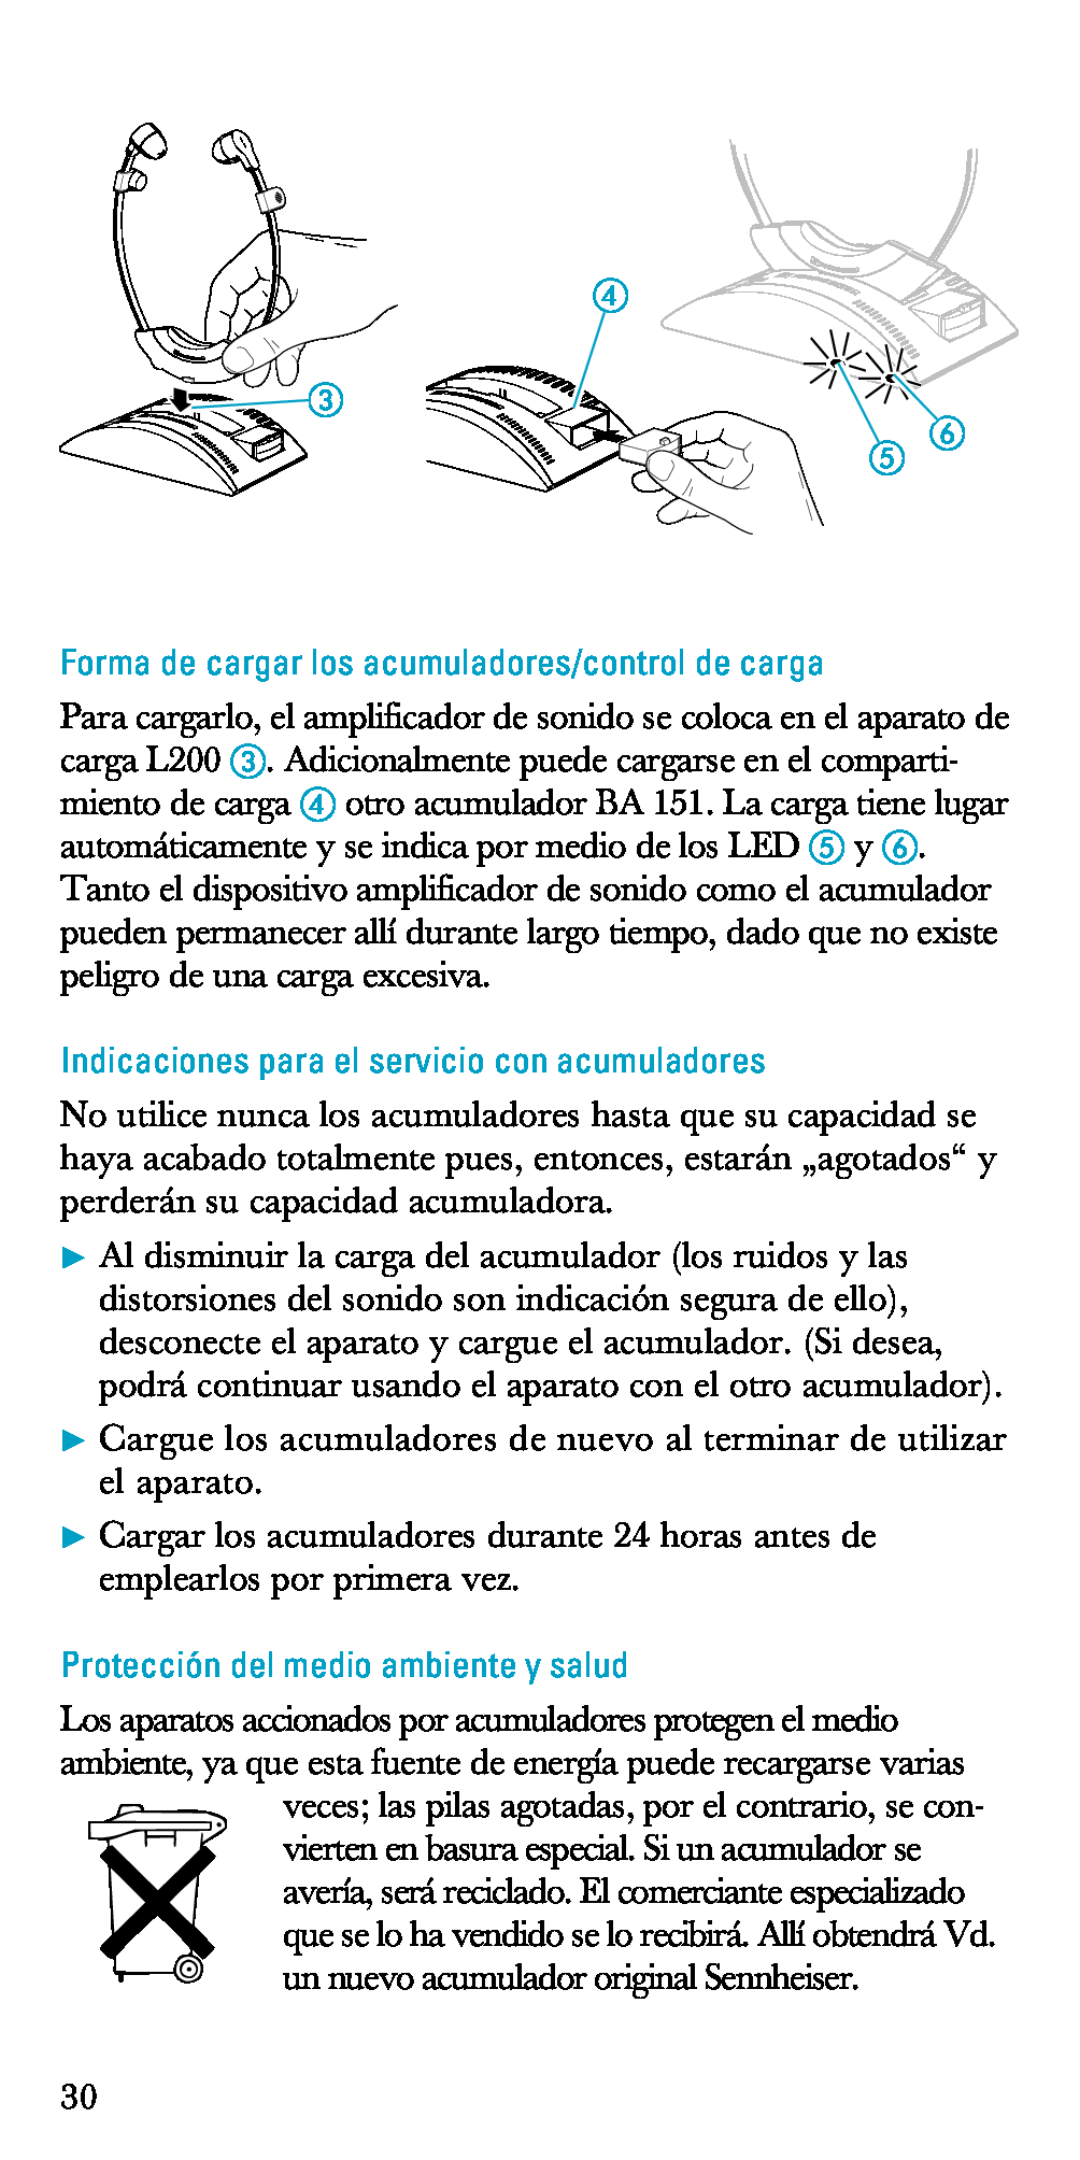 Sennheiser A200 manual Forma de cargar los acumuladores/control de carga, Indicaciones para el servicio con acumuladores 